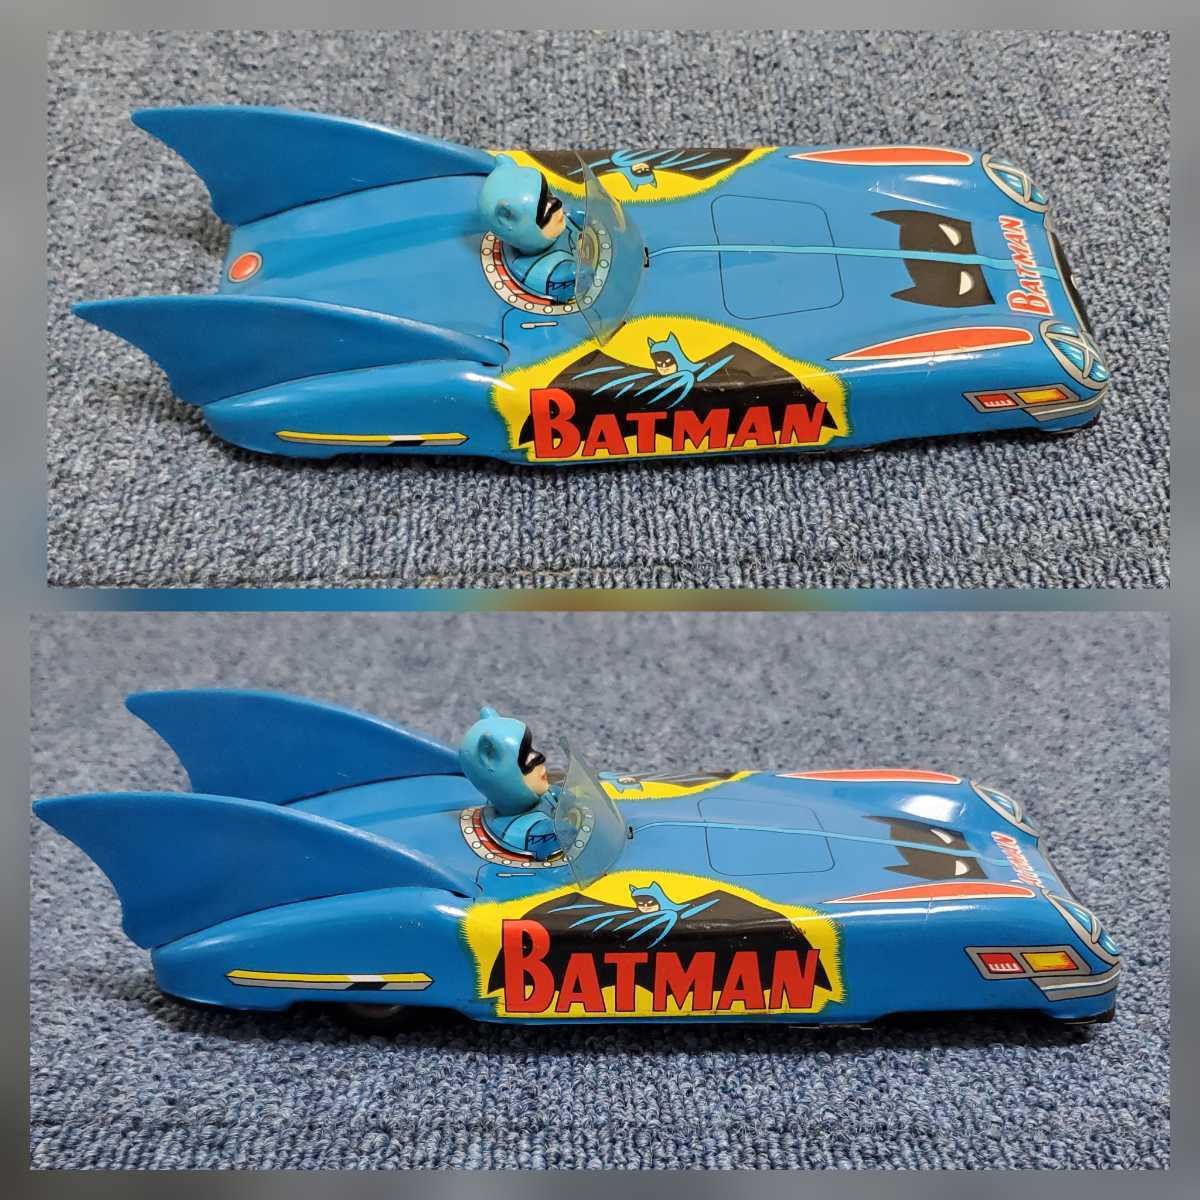 アオシン製 バットマン バットモービル ブリキ おもちゃ/当時物 昭和レトロ